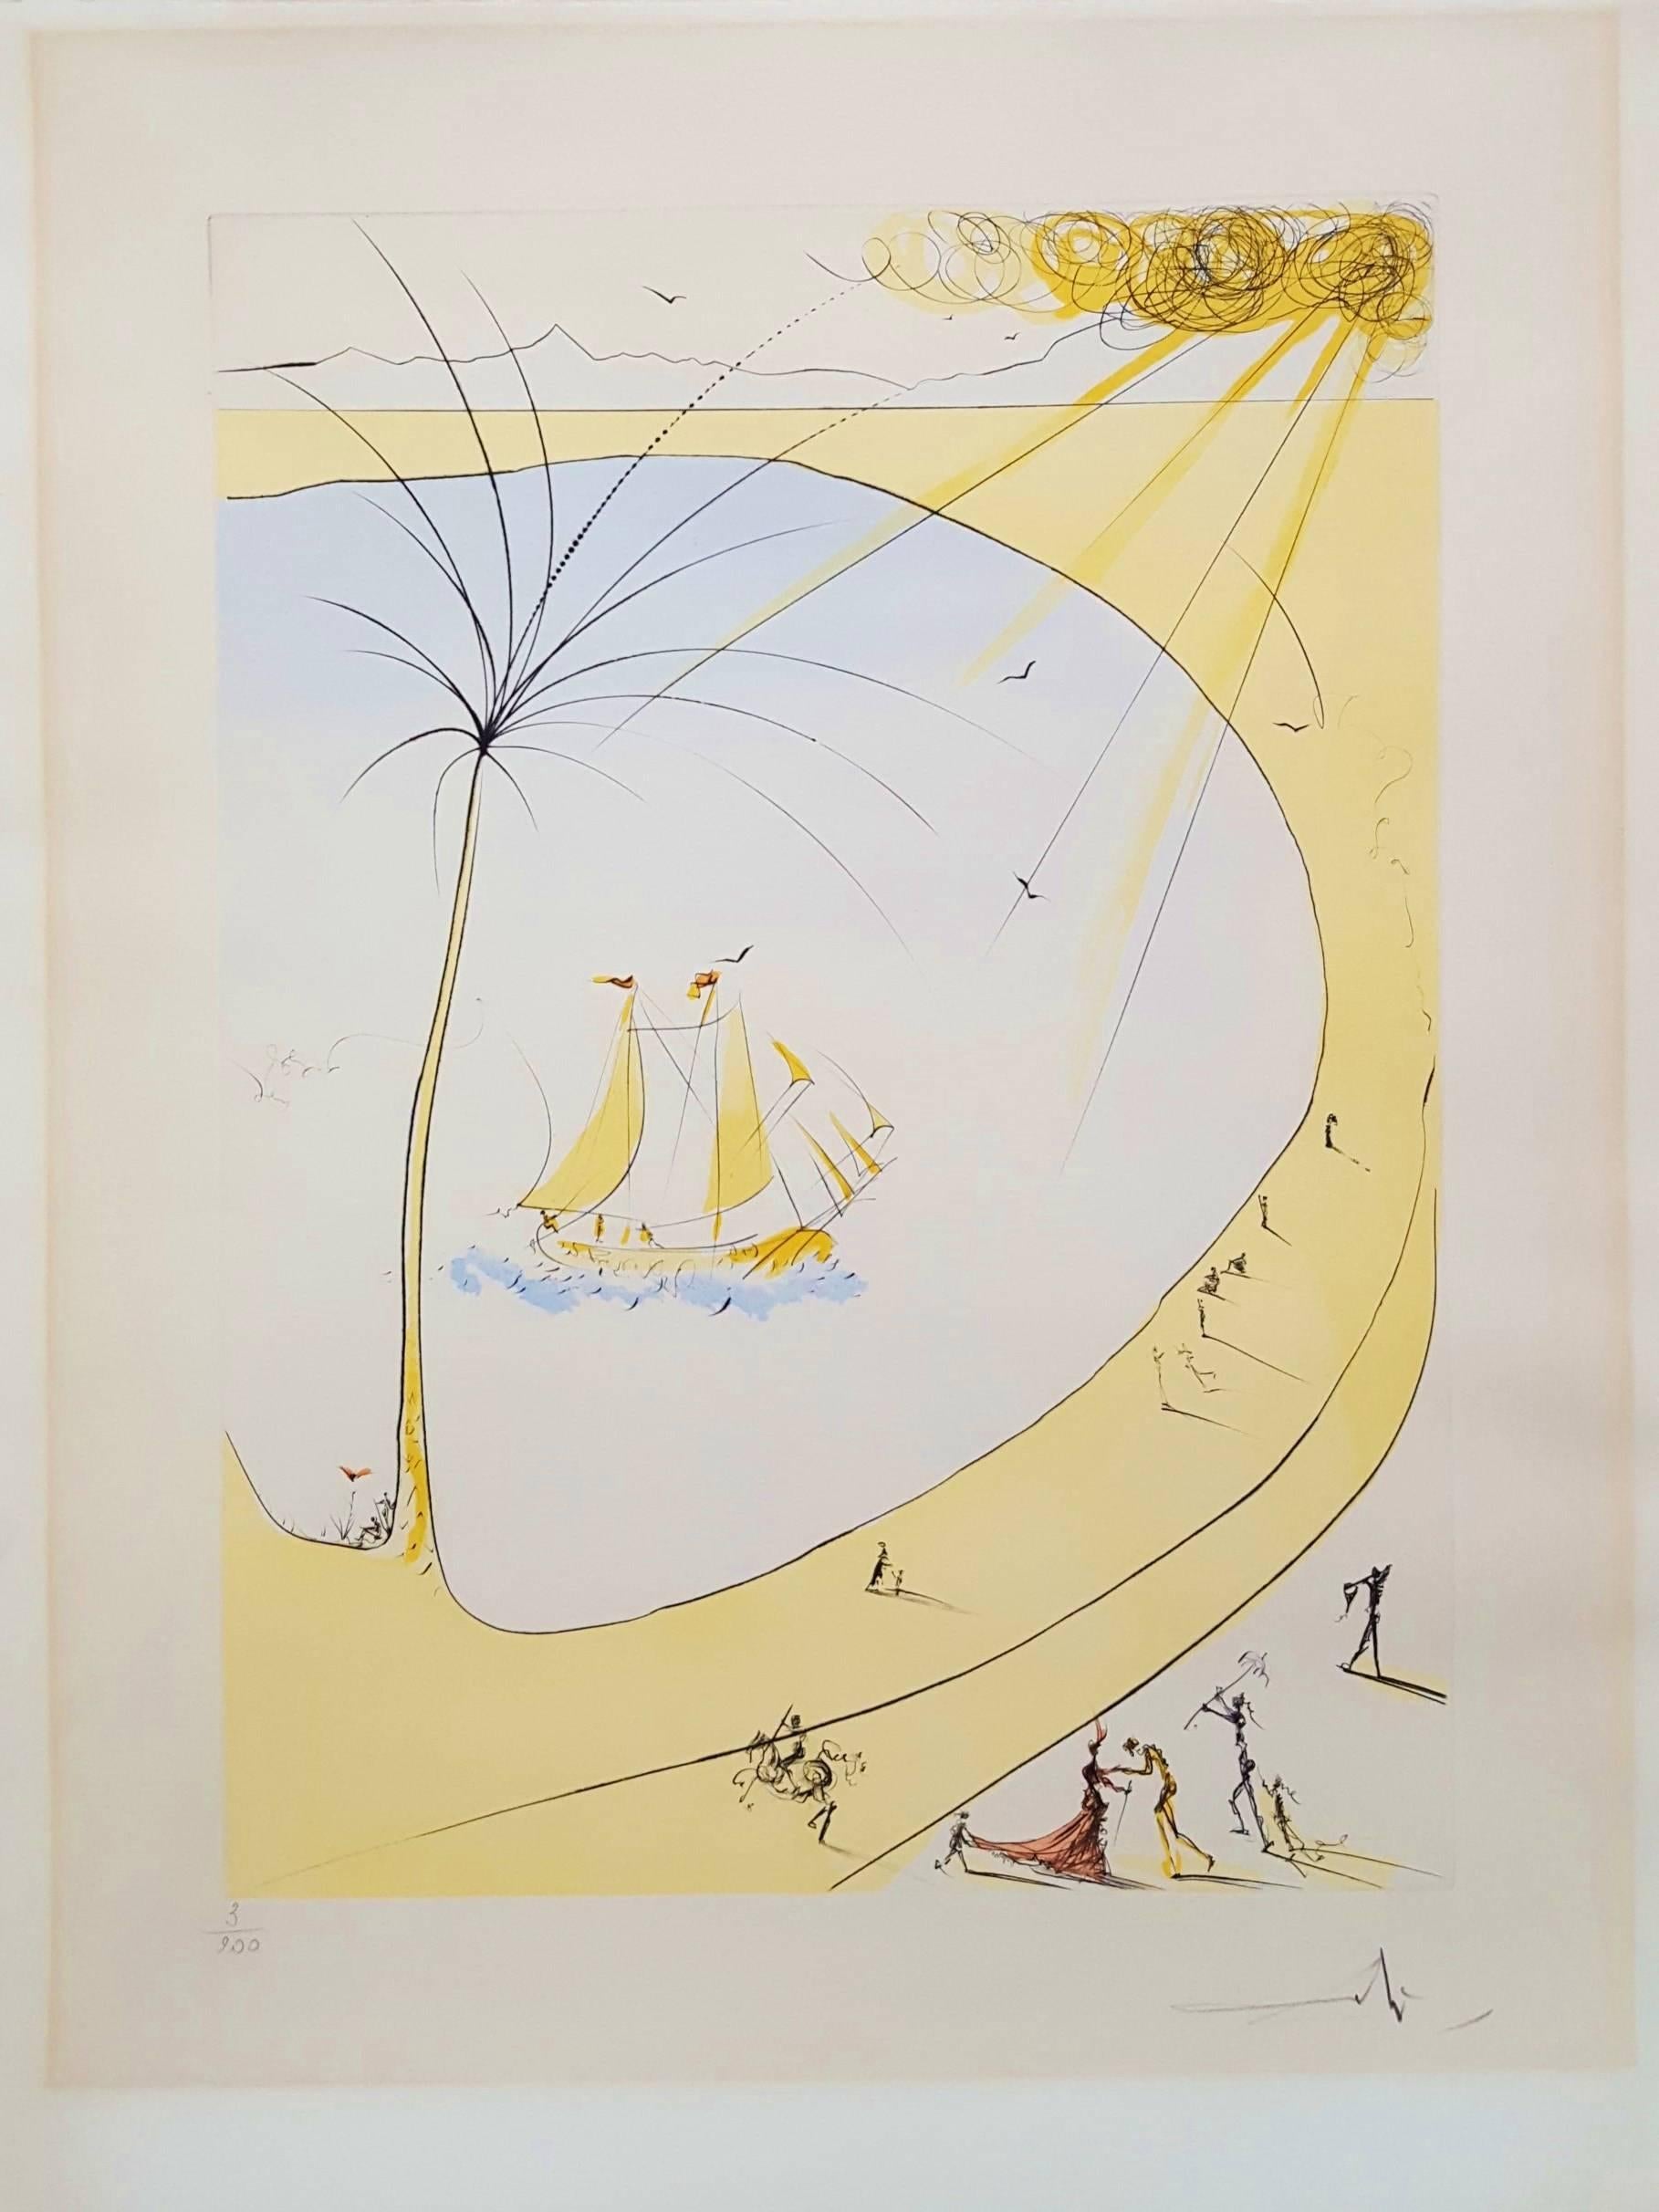 Hommage a Picasso (Cannes) (Cote d'Azur) - Print by Salvador Dalí